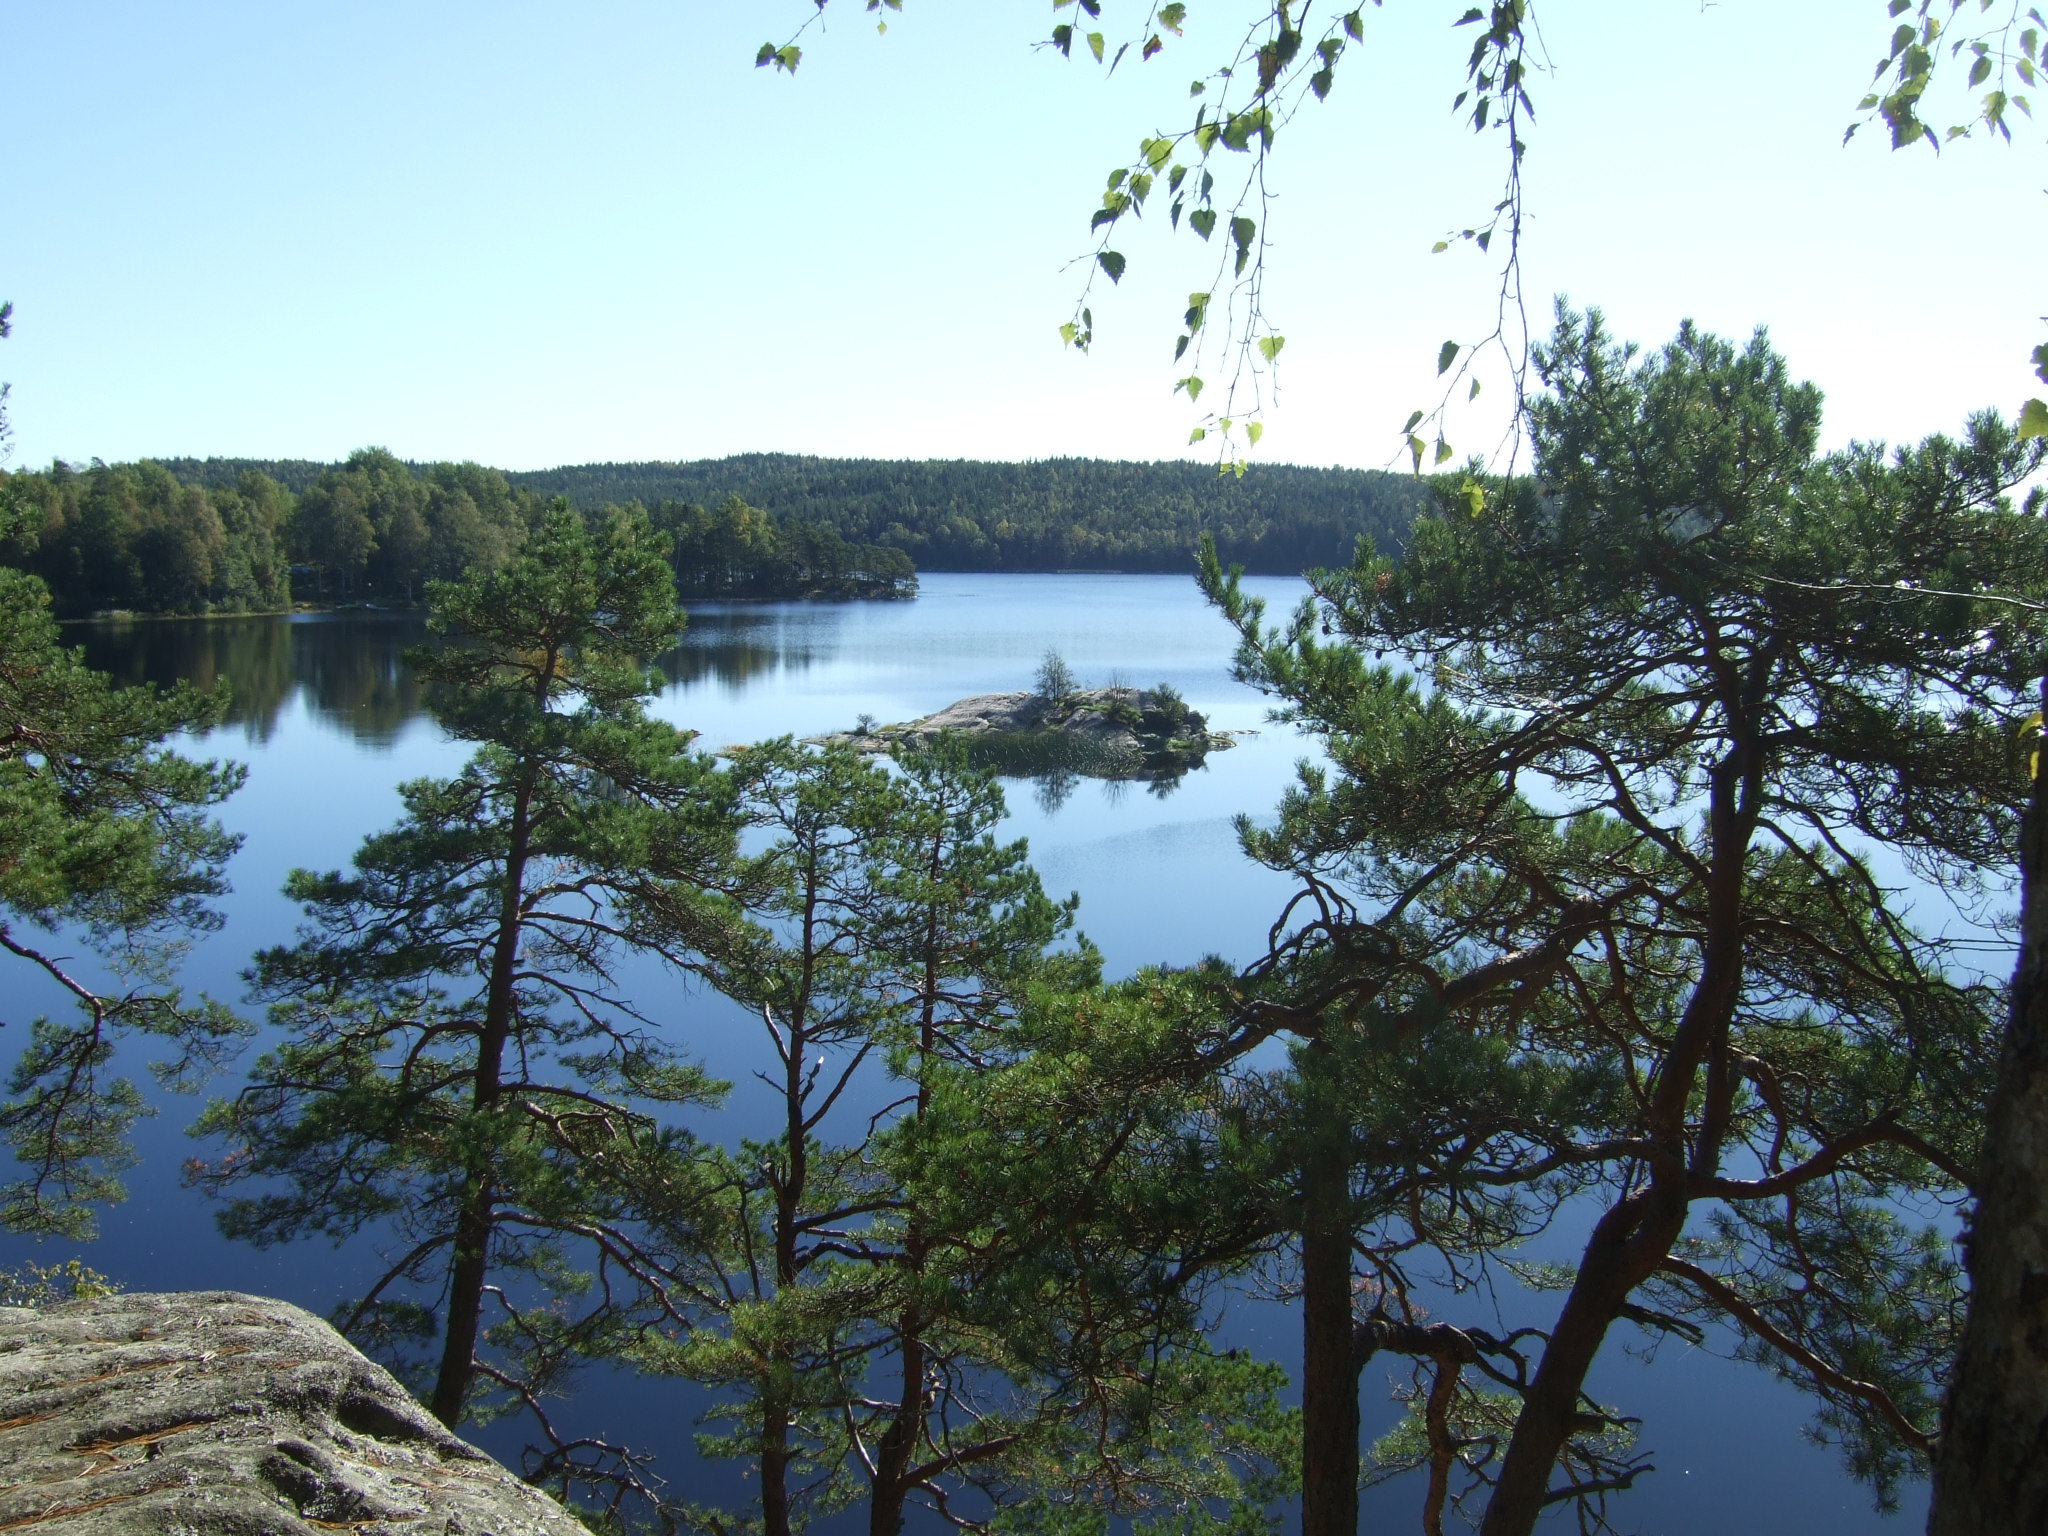 Utsikt över lilla Härsjön där man ser sjön och träd.